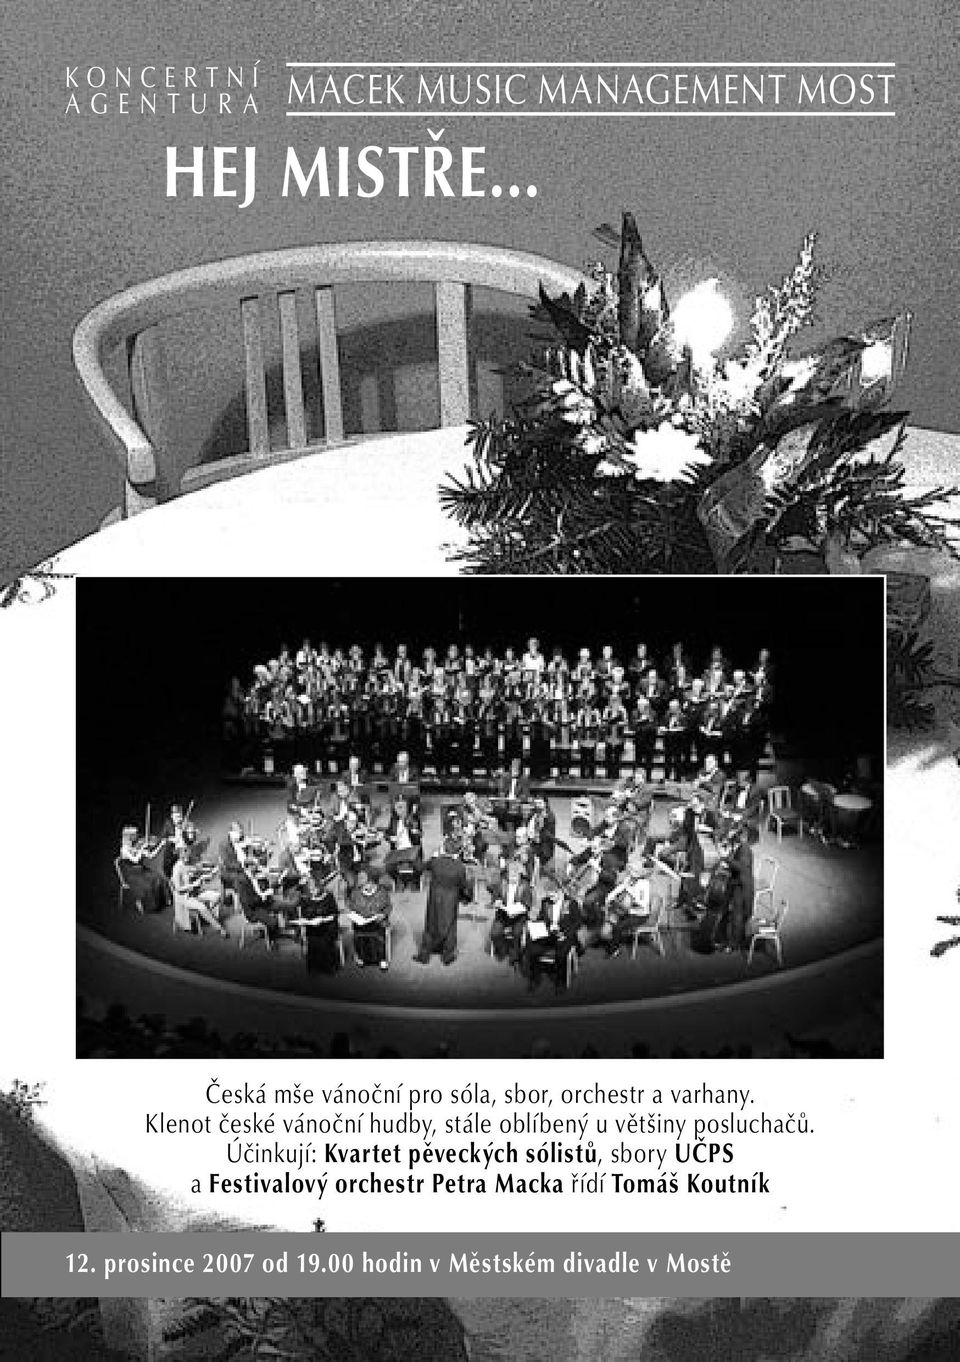 Klenot české vánoční hudby, stále oblíbený u většiny posluchačů.